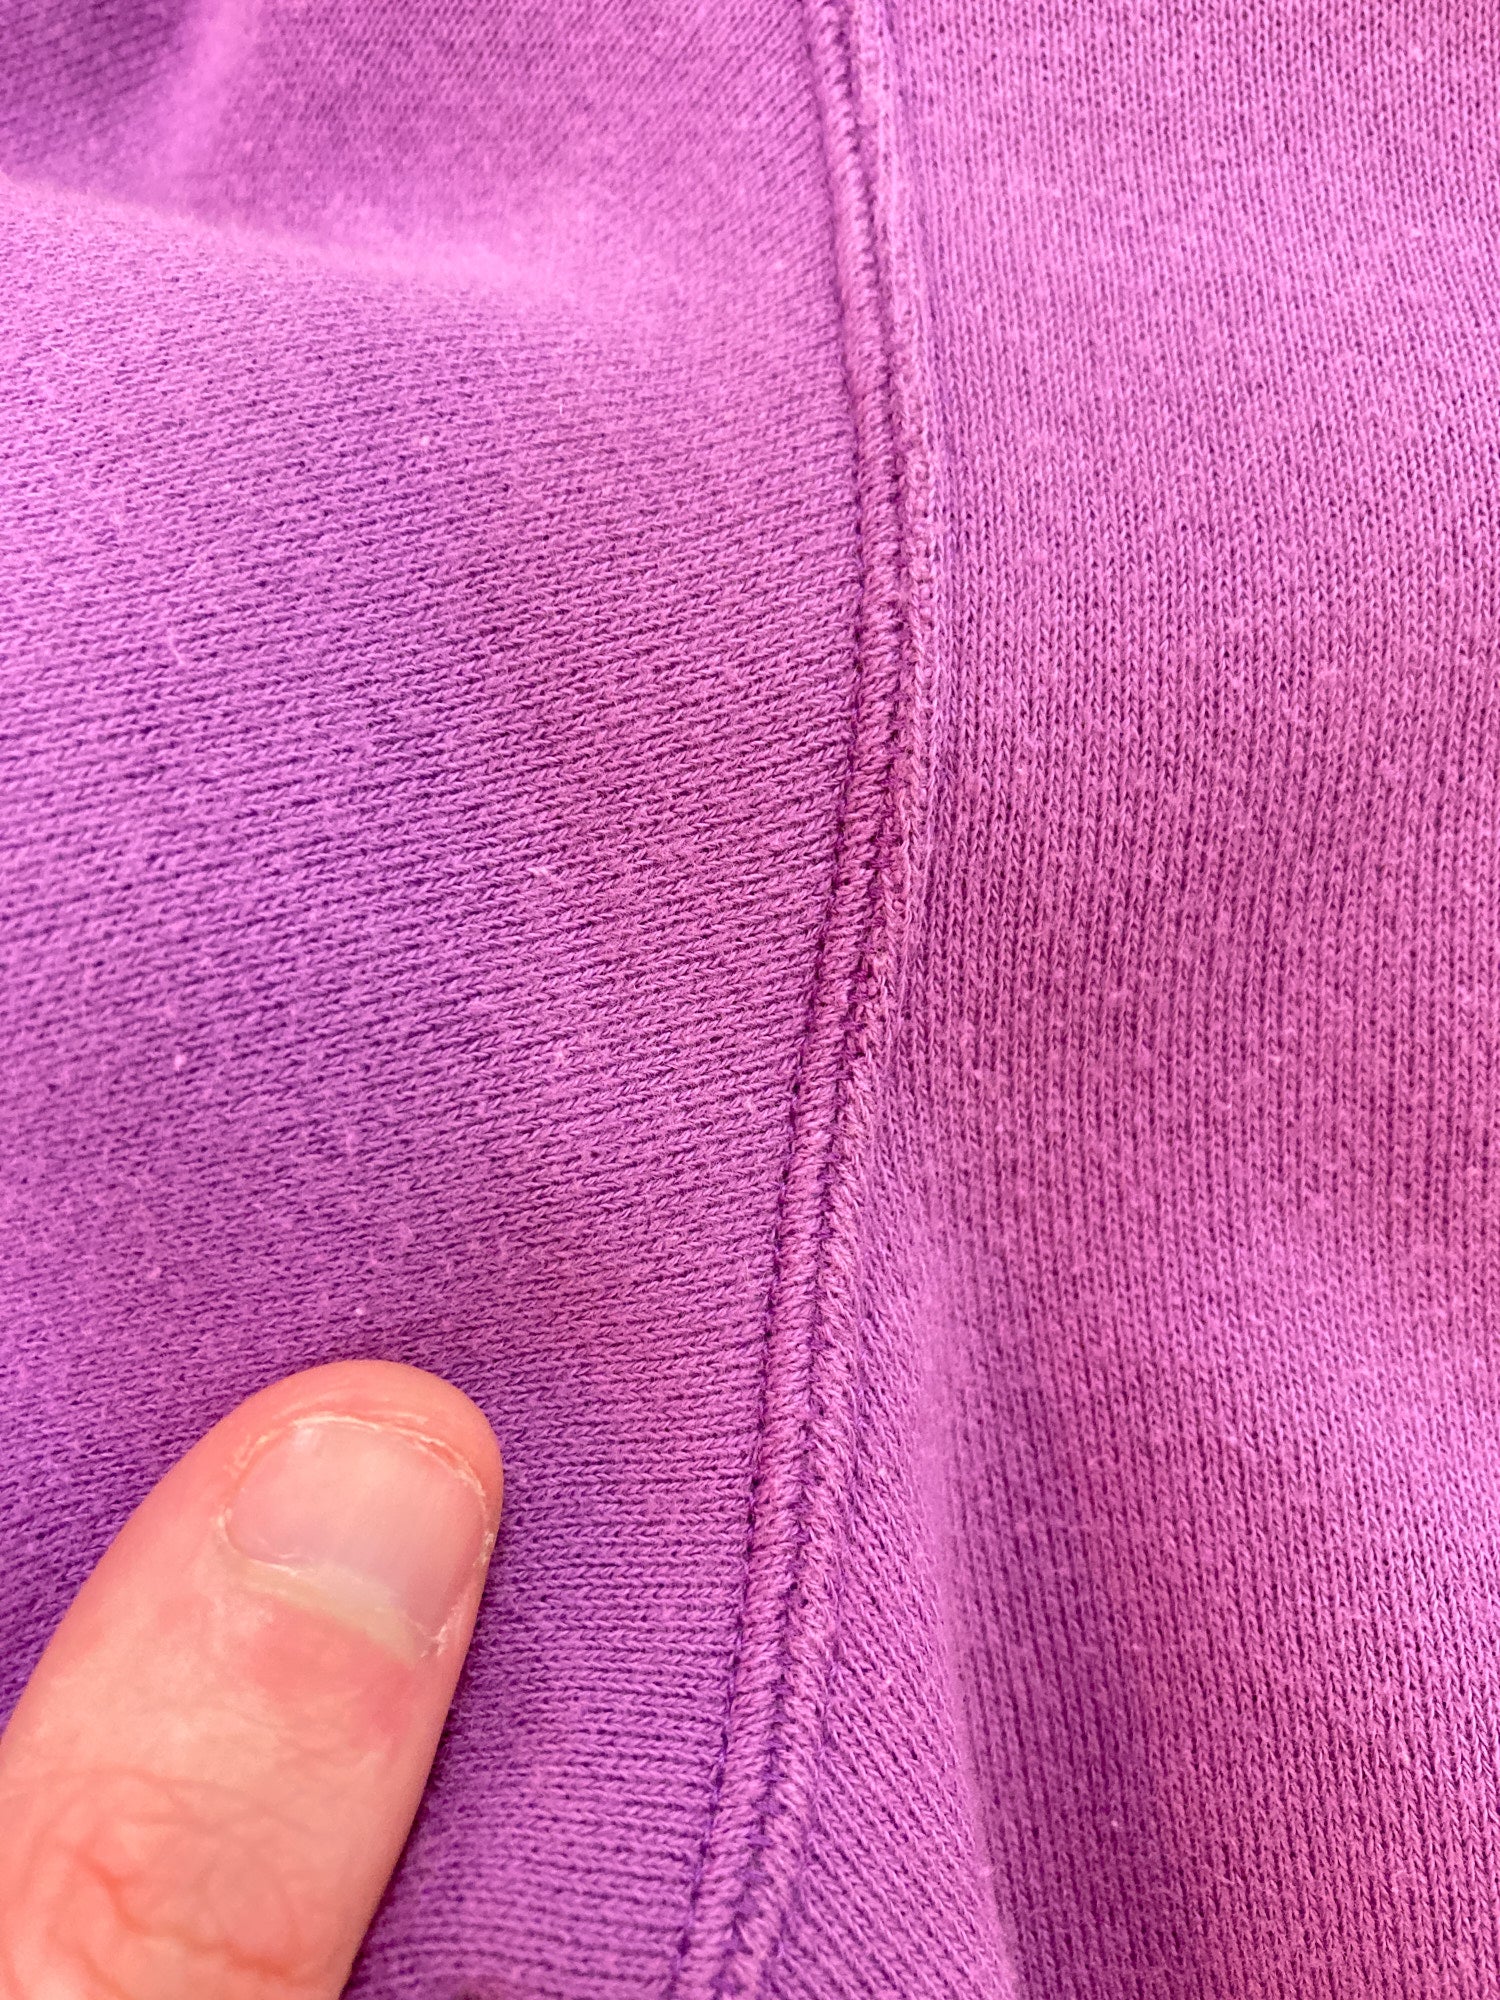 Robe de Chambre Comme des Garcons 2000 cropped purple cotton sweatshirt